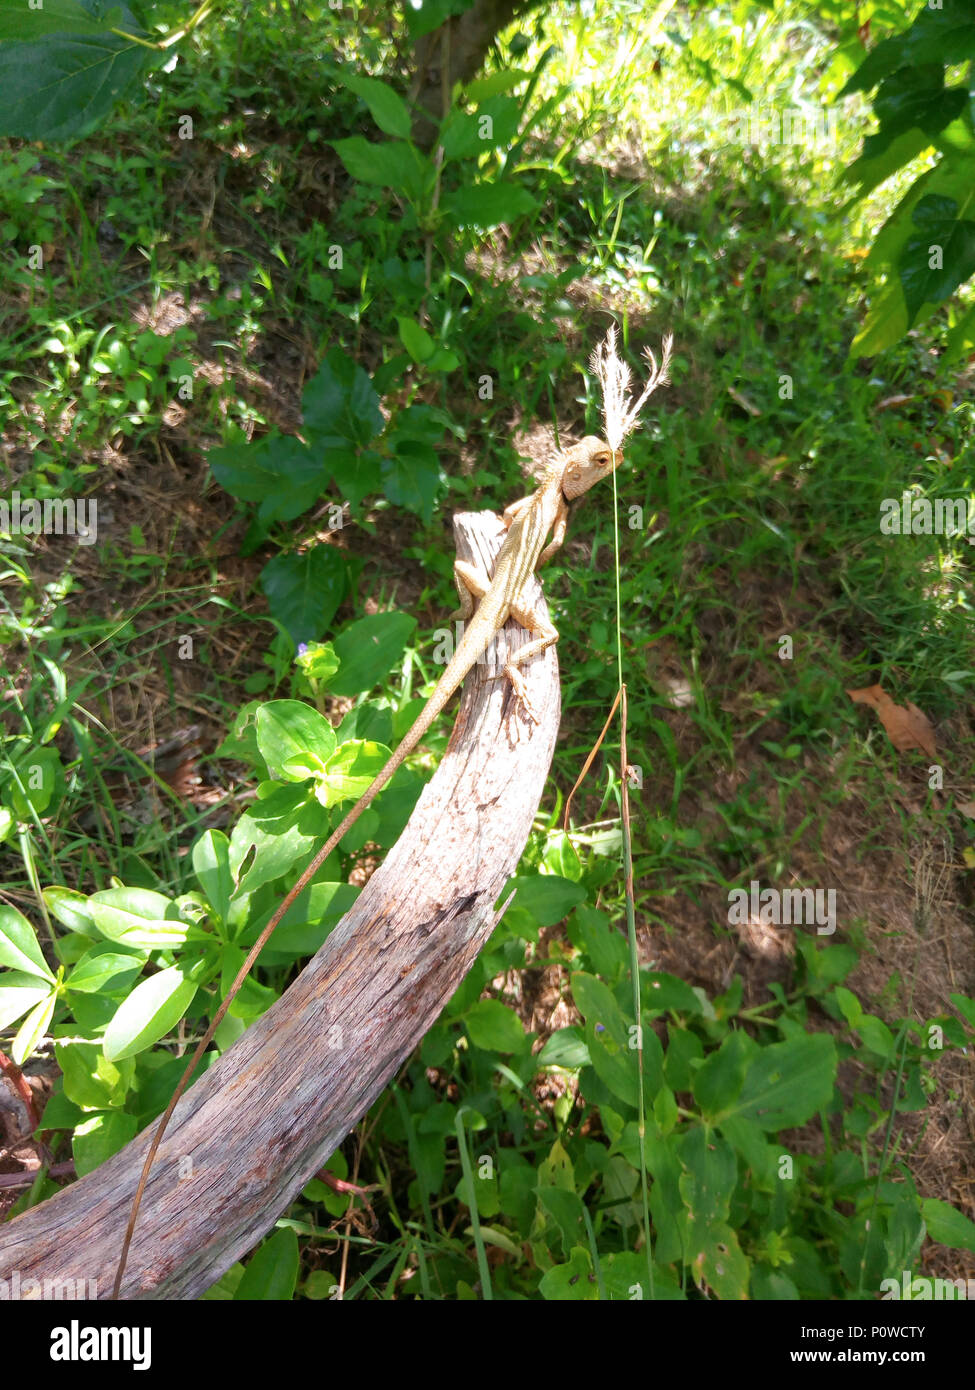 Oriental garden lizard under sunlight in the tropical garden. animal wildlife in Thailand. Stock Photo